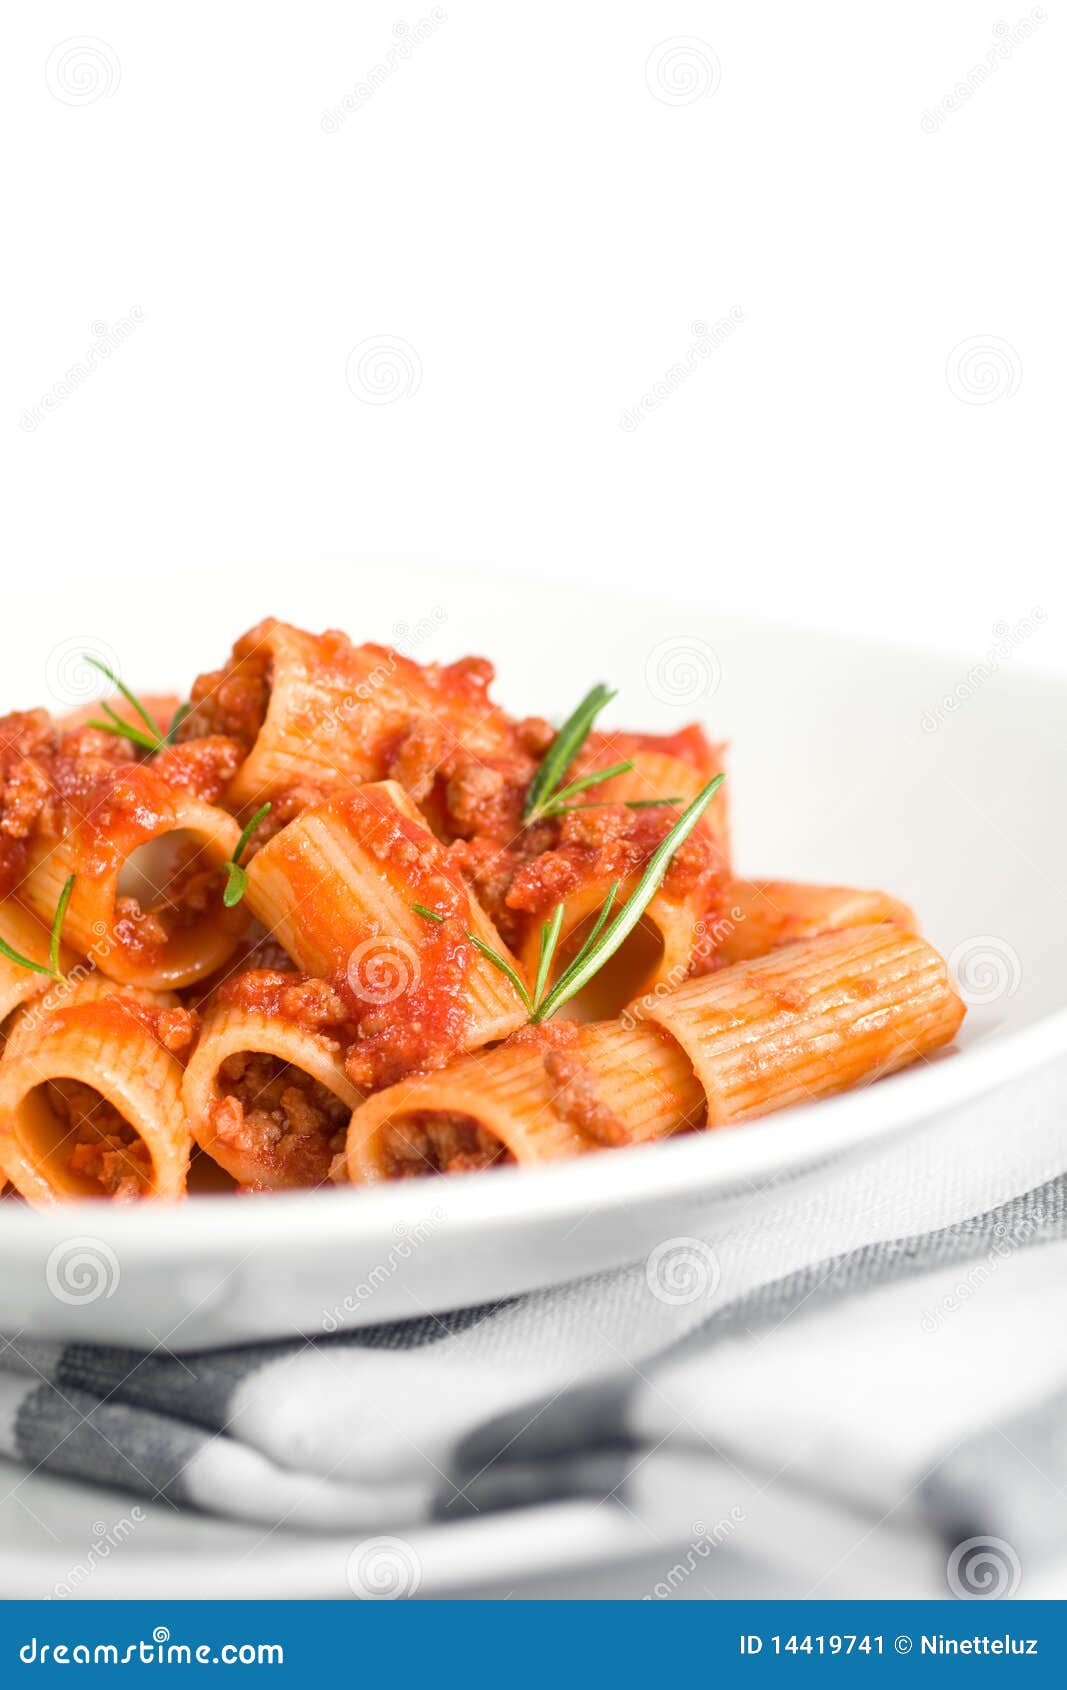 italian pasta and sauce